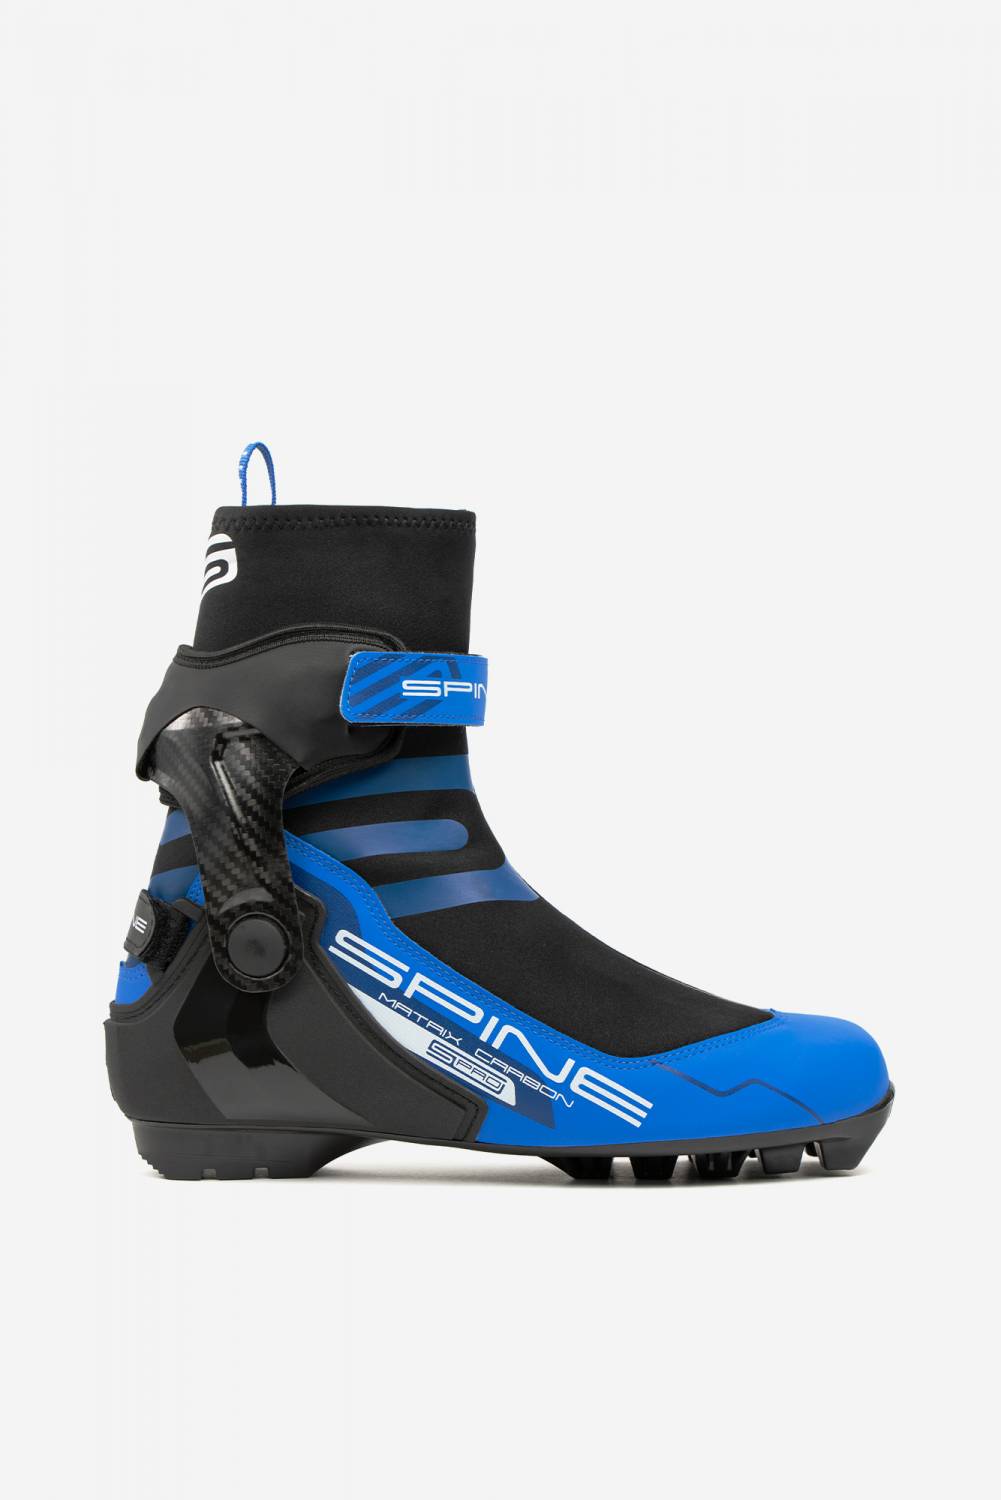 Лыжные ботинки Spine Matrix Carbon Pro SNS PILOT мод. 473